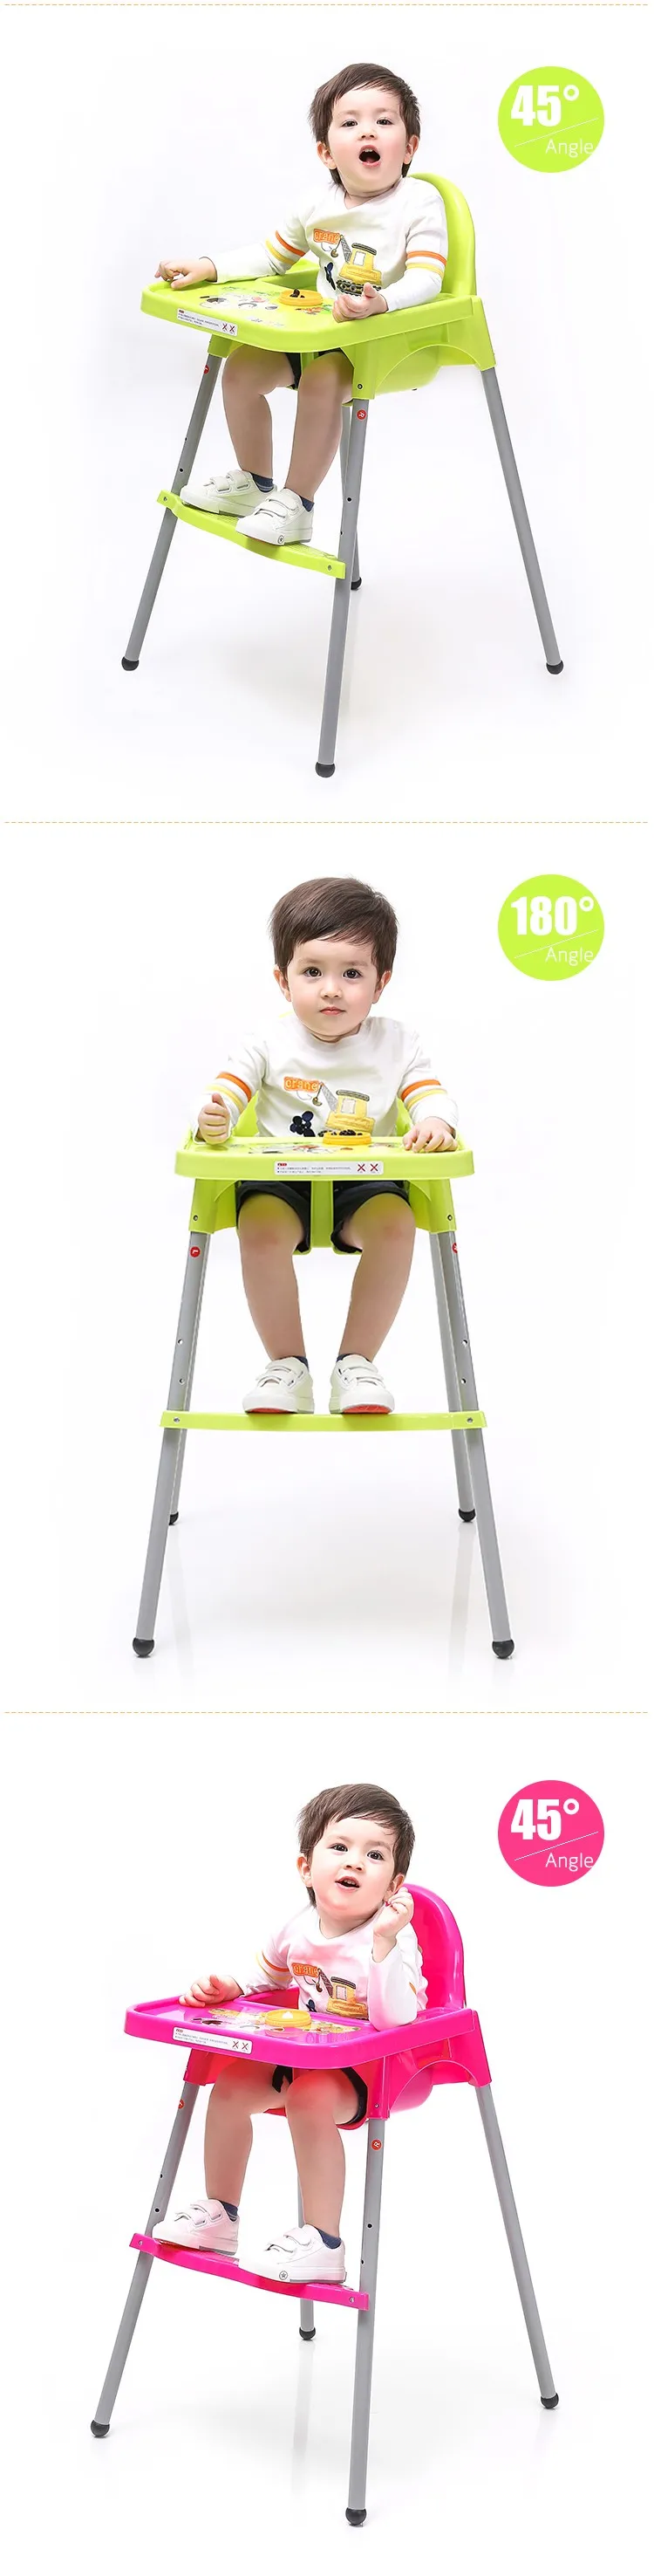 Бесплатная доставка Здоровый Уход детский стульчик для кормления Стул простой Портативный Путешествия Carry шезлонг Haute Enfant